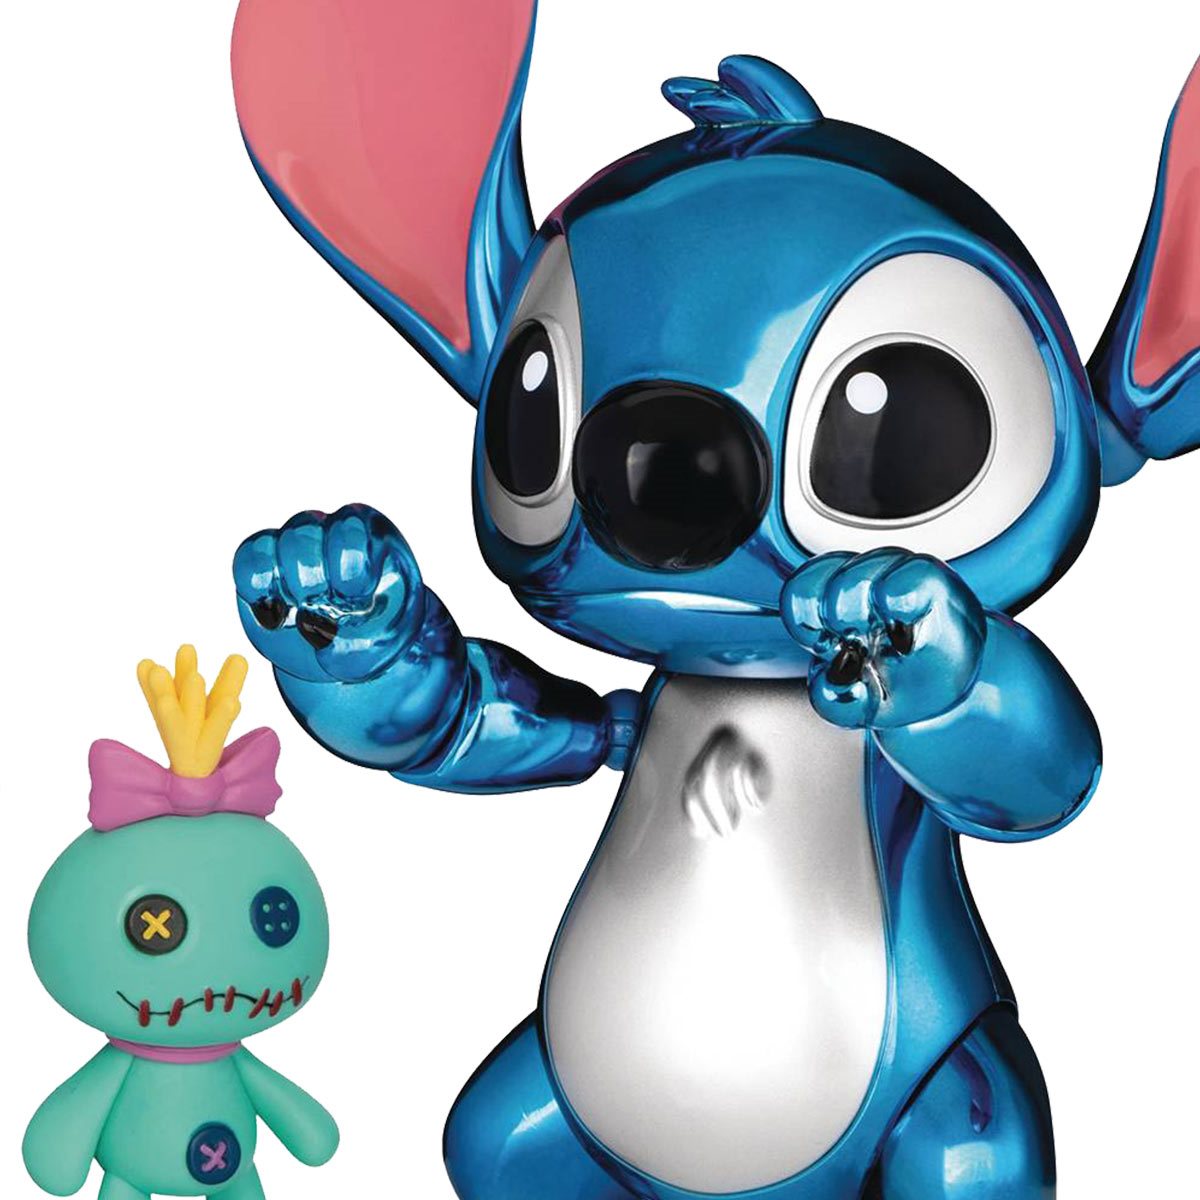 Disney Lilo And Stitch 70x140 cm Blue